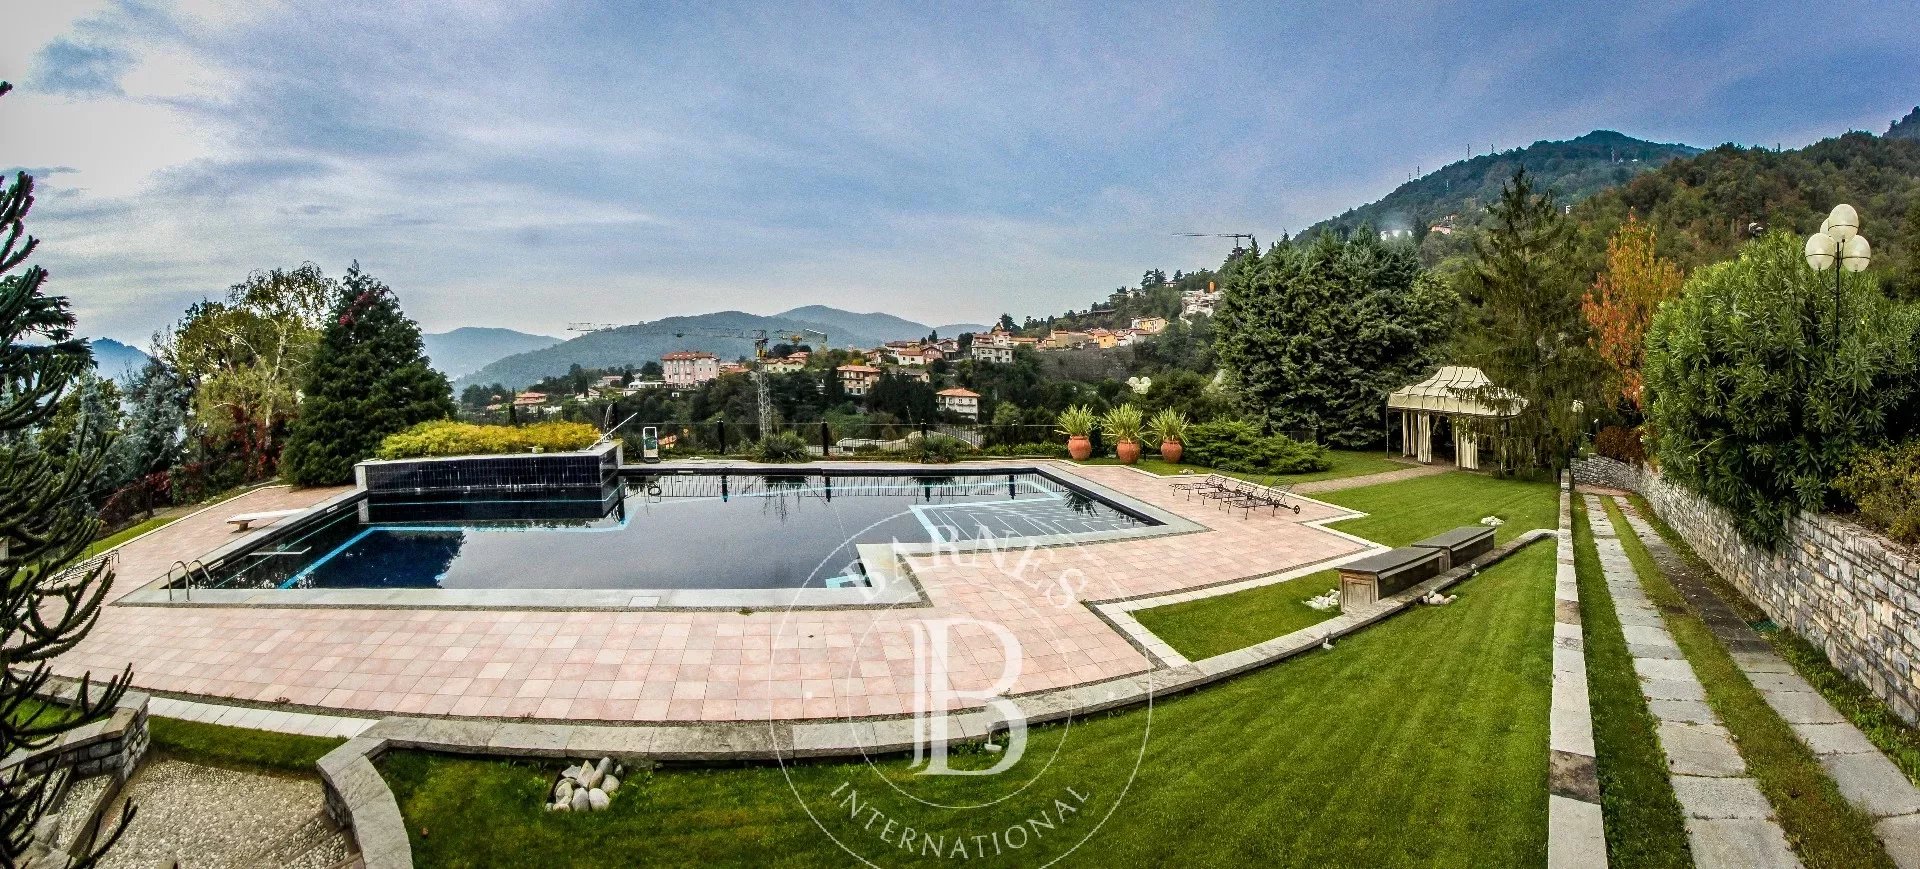 Villa avec tour à Cernobbio - picture 4 title=